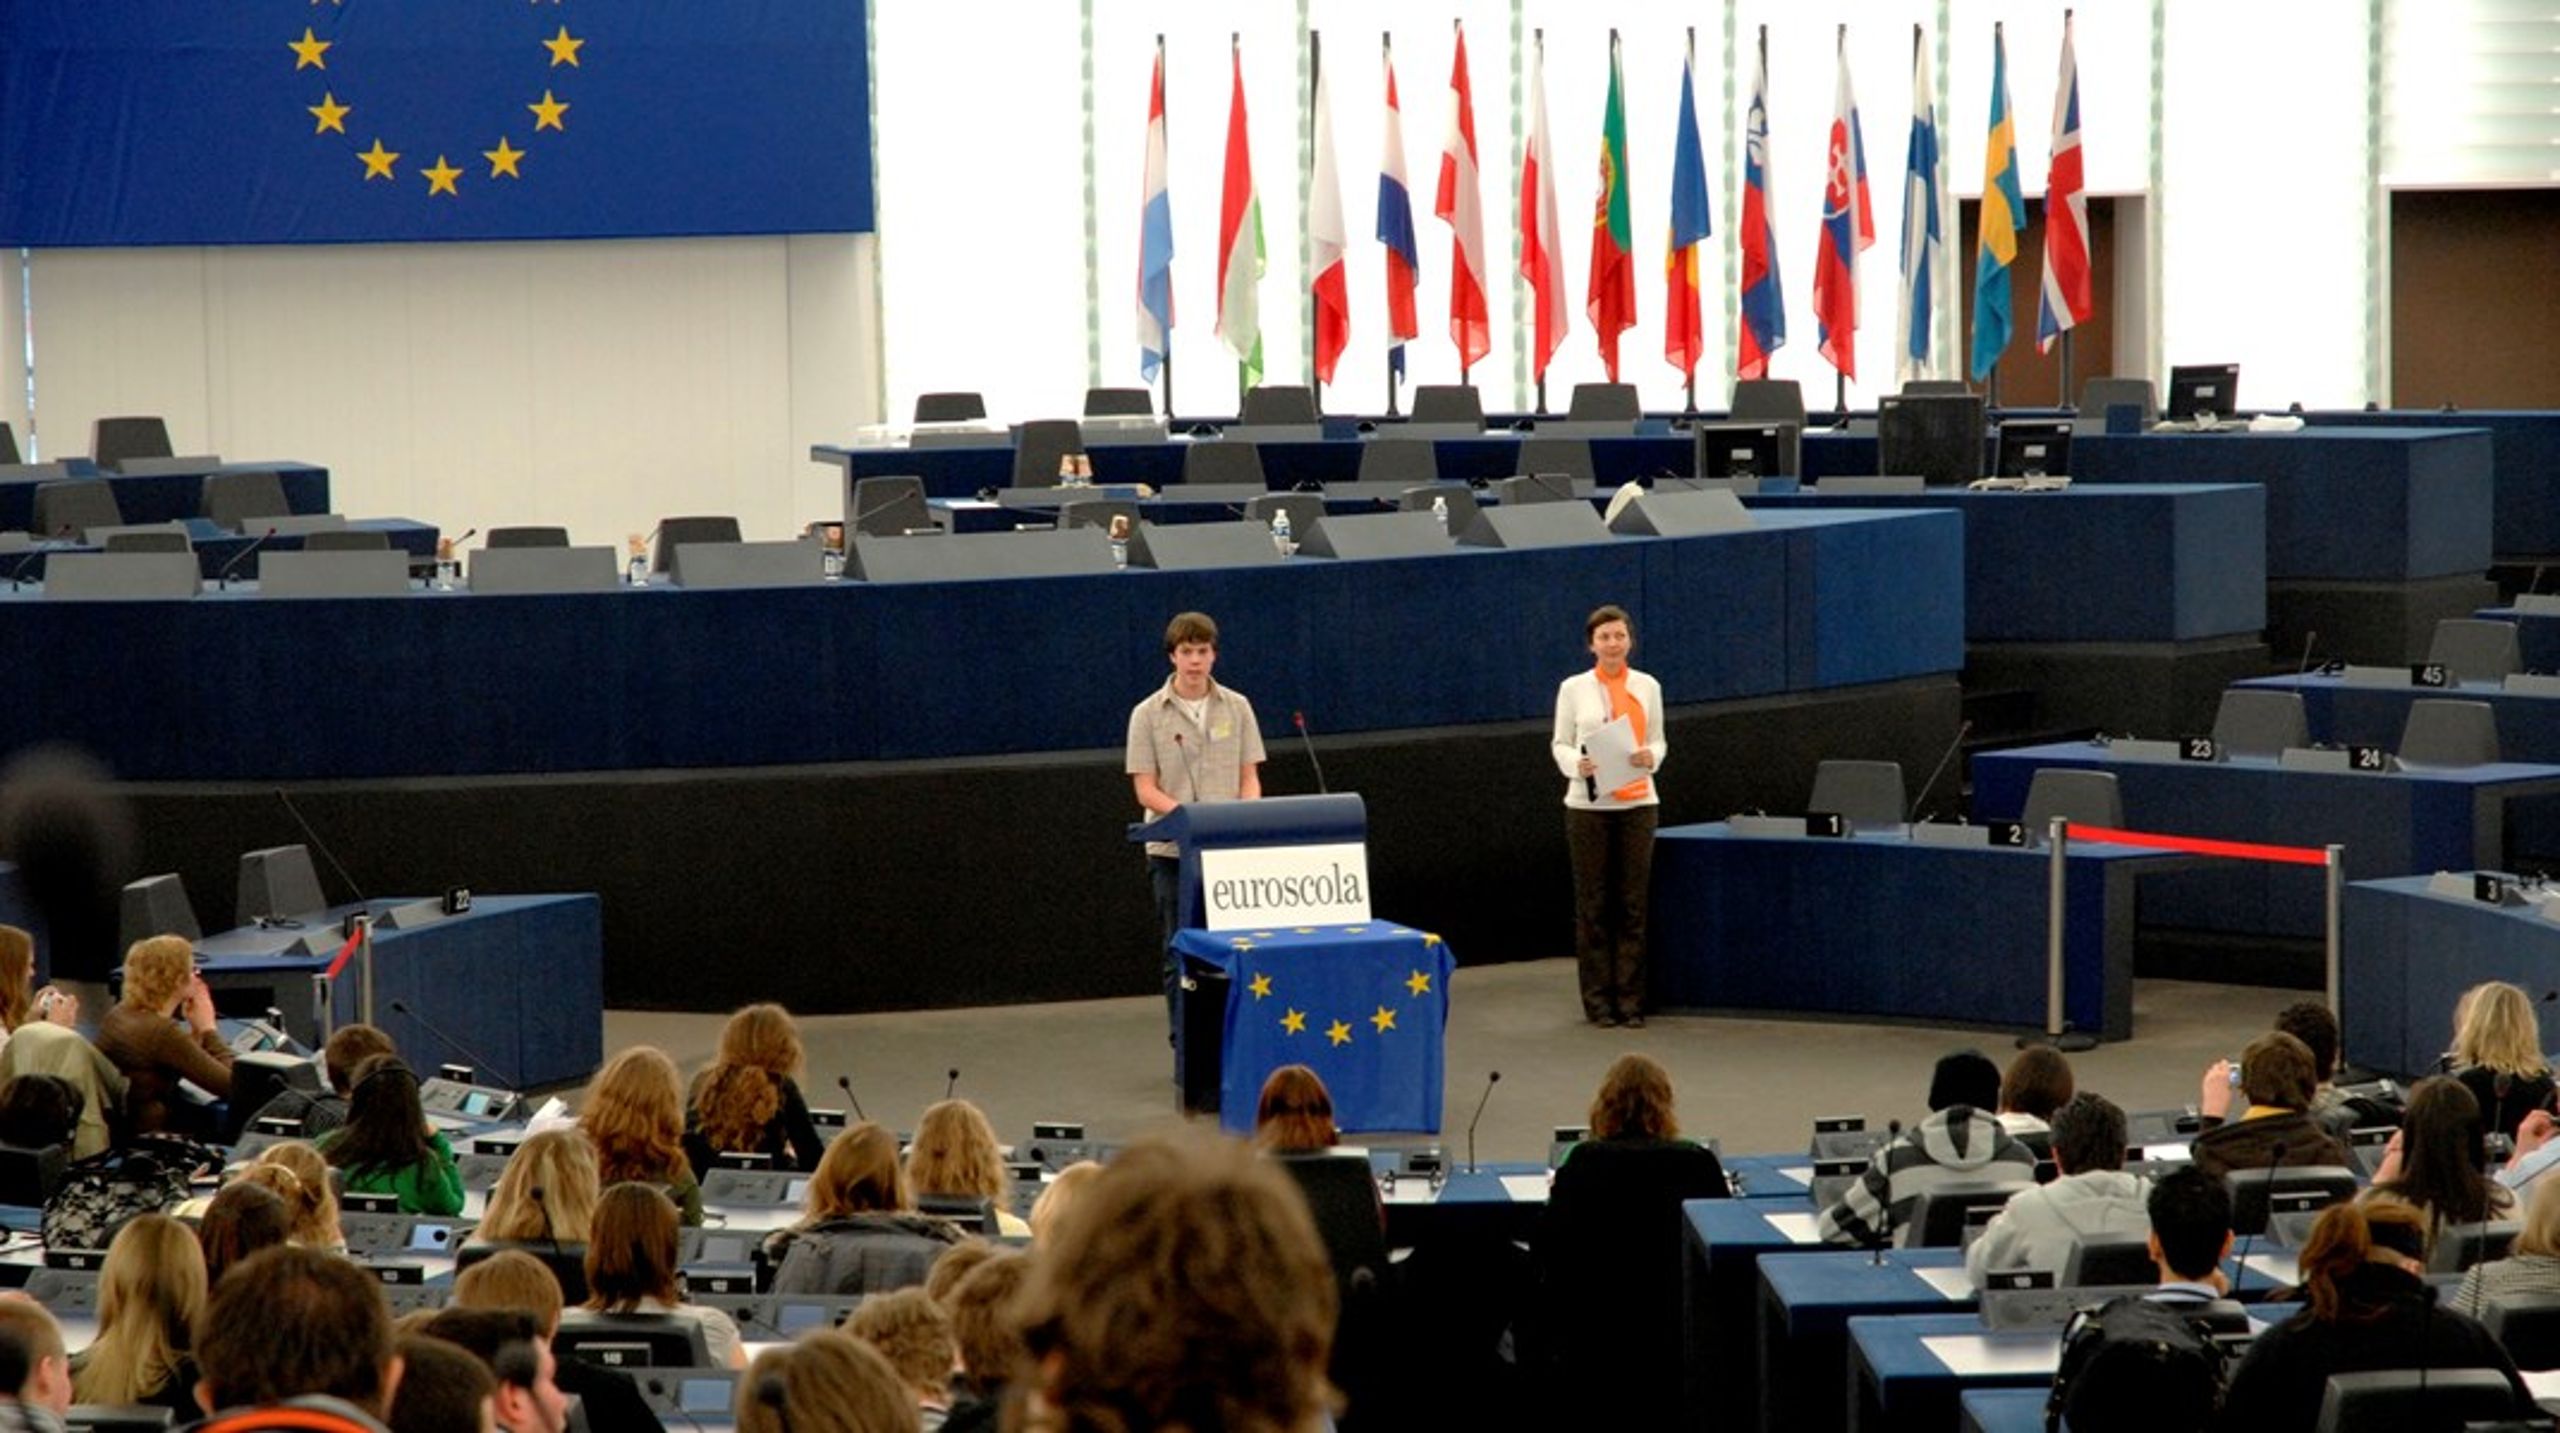 Skolklasser provar på att vara EU-parlamentariker för en dag. Bilden är från ett tidigare tillfälle.